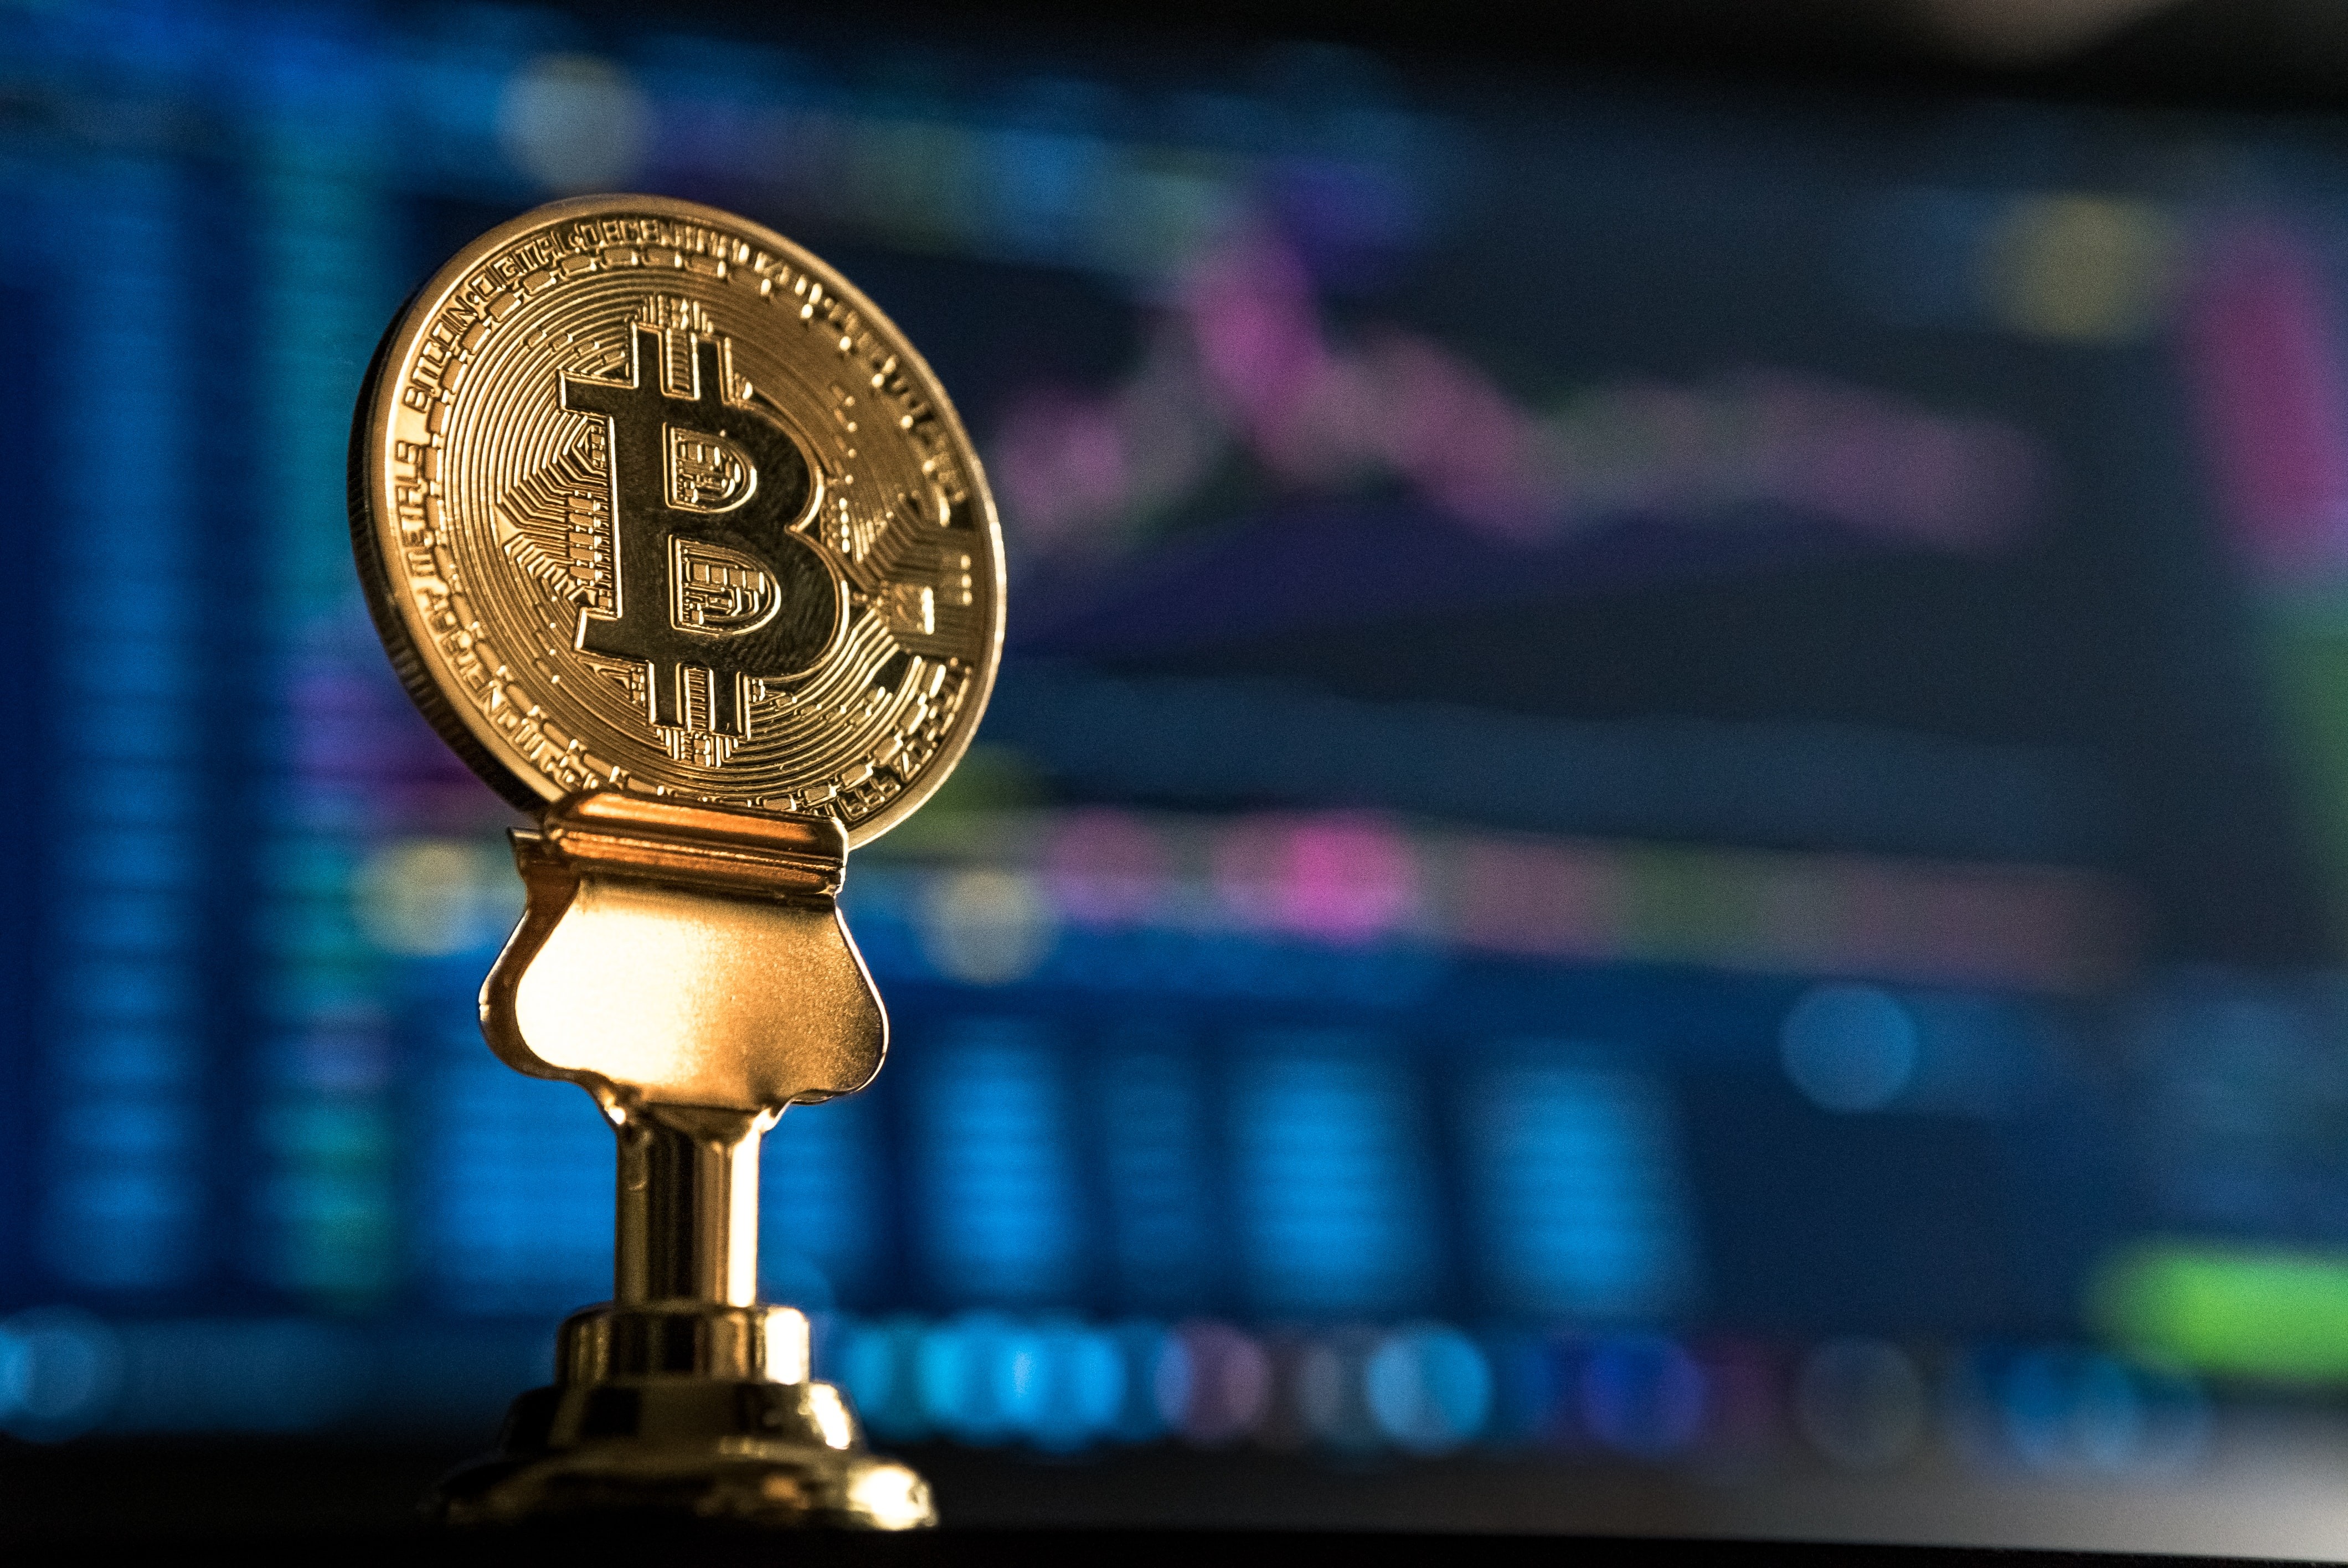 B3 prevê lançar contrato futuro de bitcoin em abril